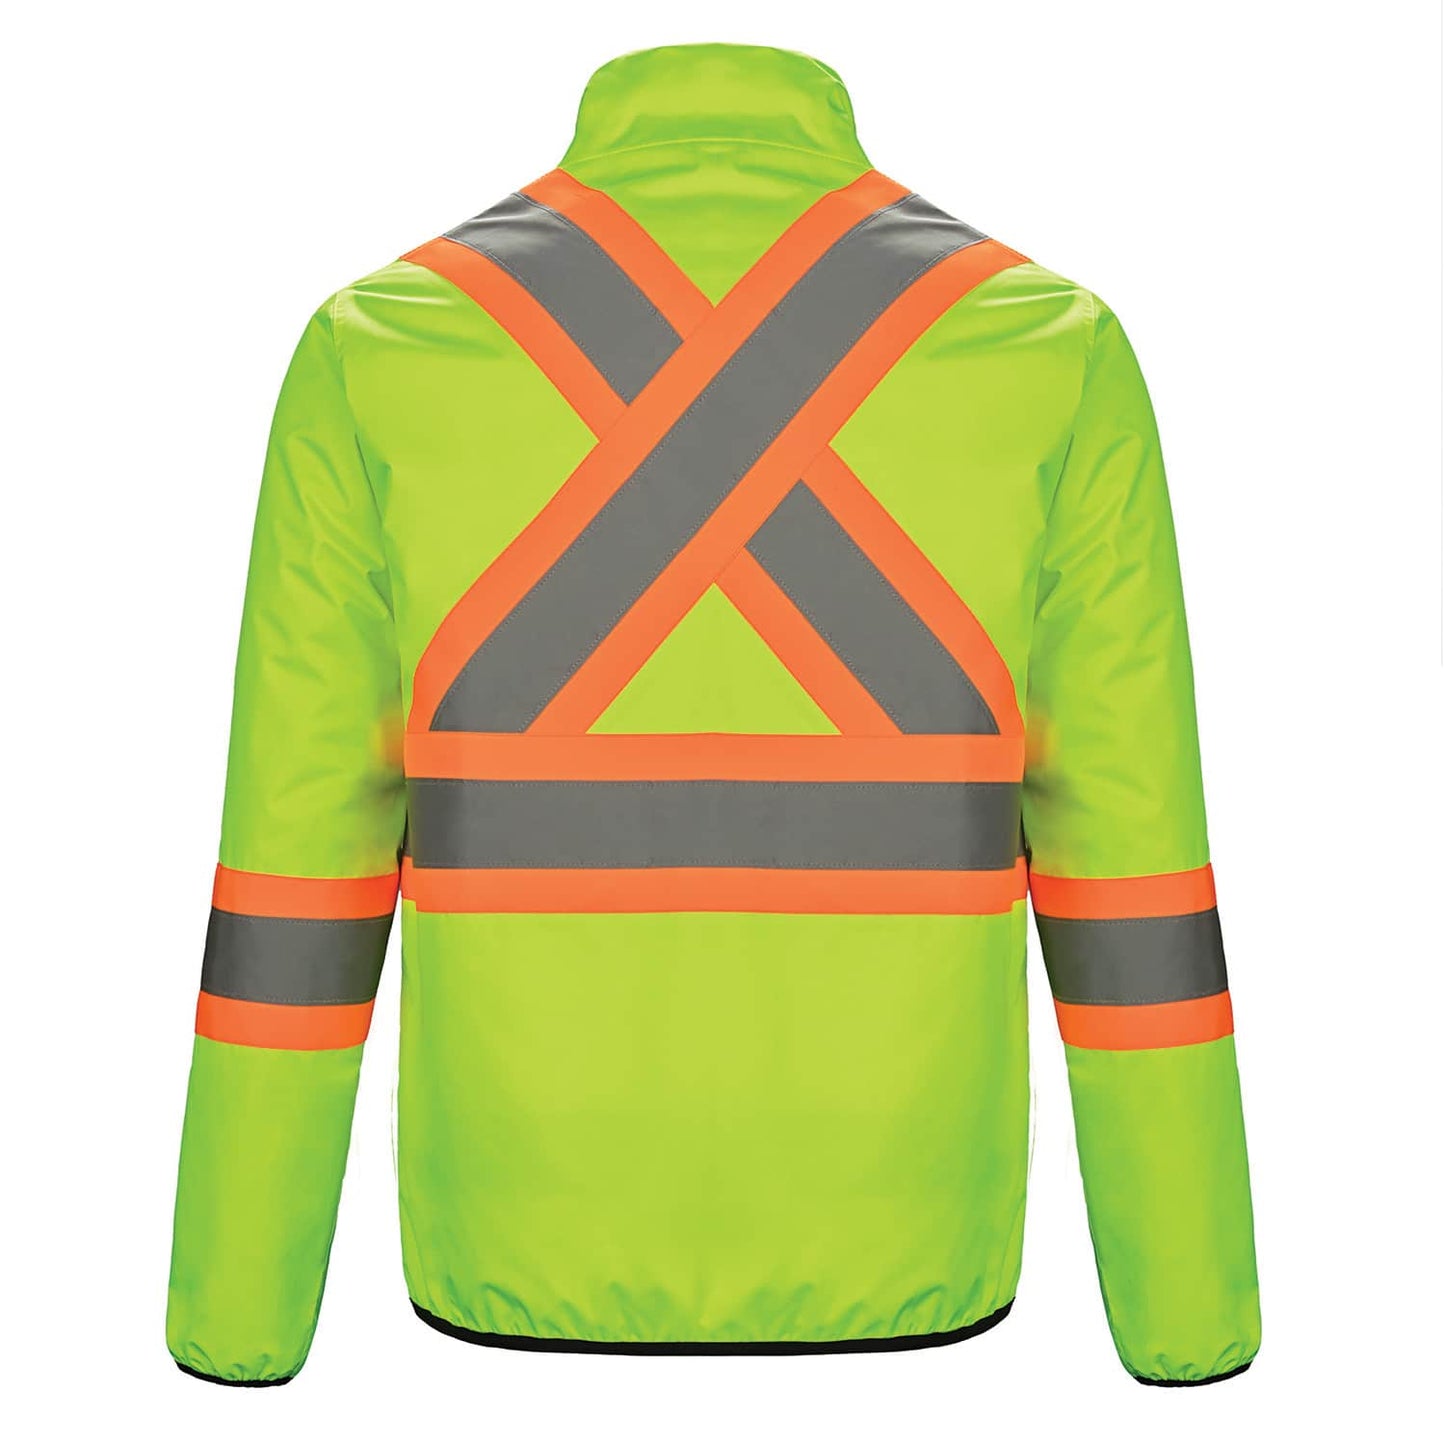 Safeguard – Hi-Vis Reversible Jacket